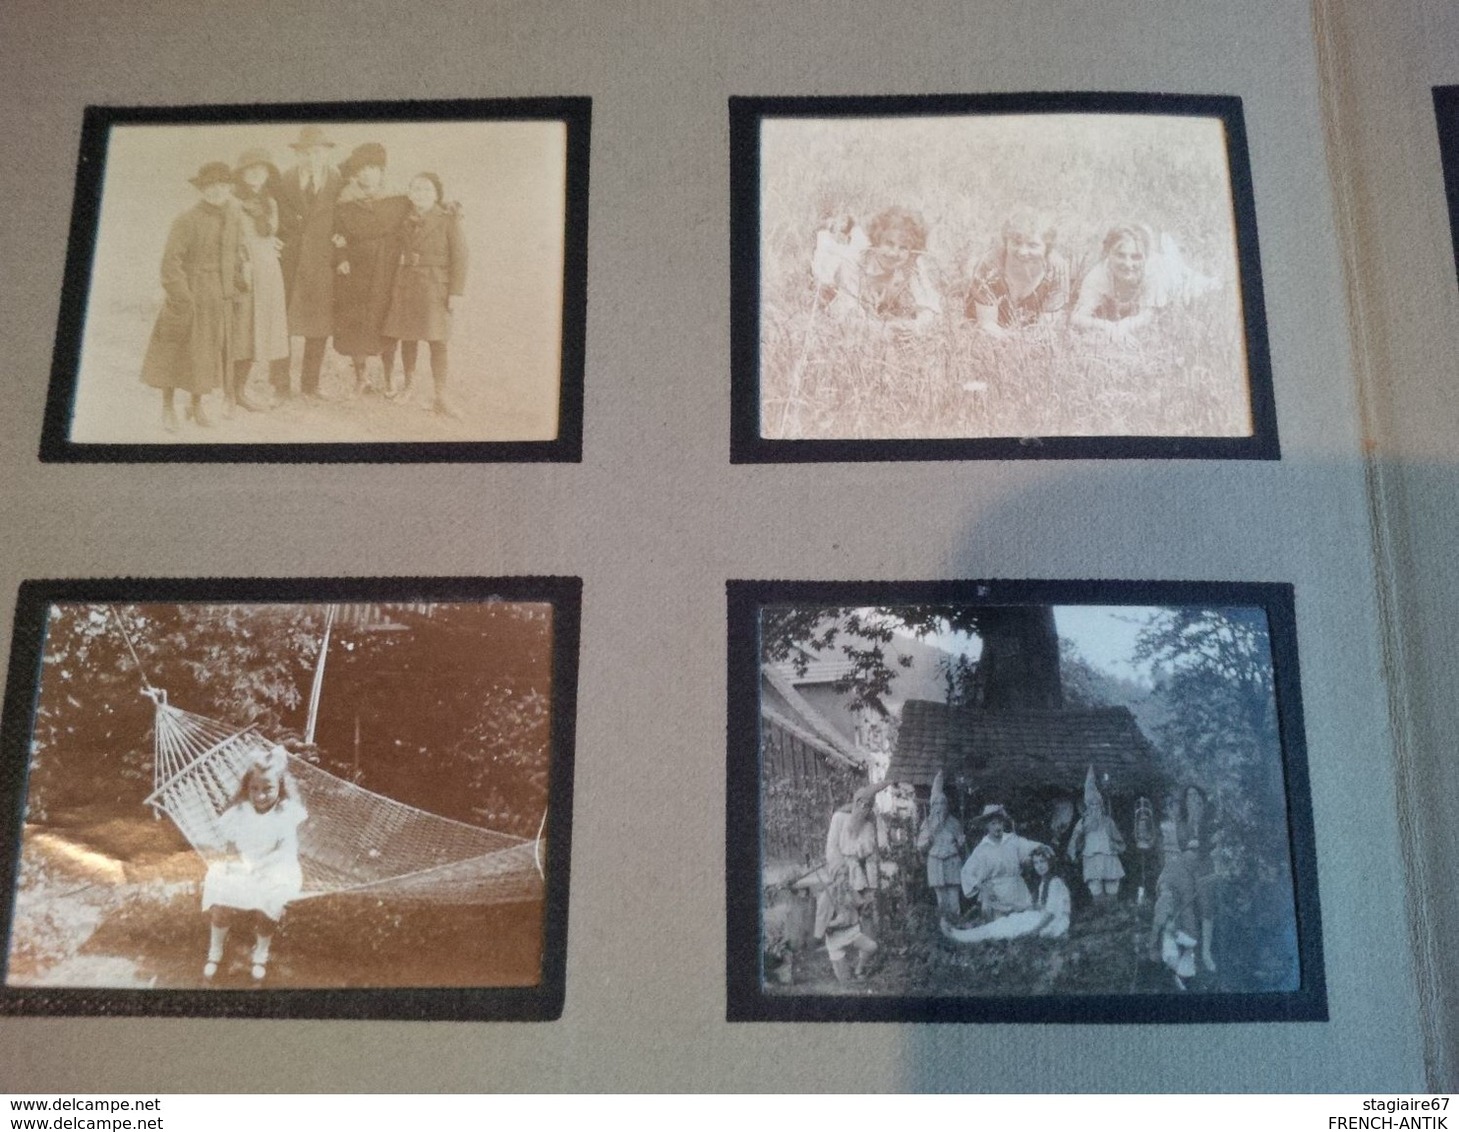 ALBUM PHOTO DE FAMILLE STRASBOURG ET ALSACE GLOIRE AUX VAINQUEURS 1919 MILITARIA PERSONNAGES